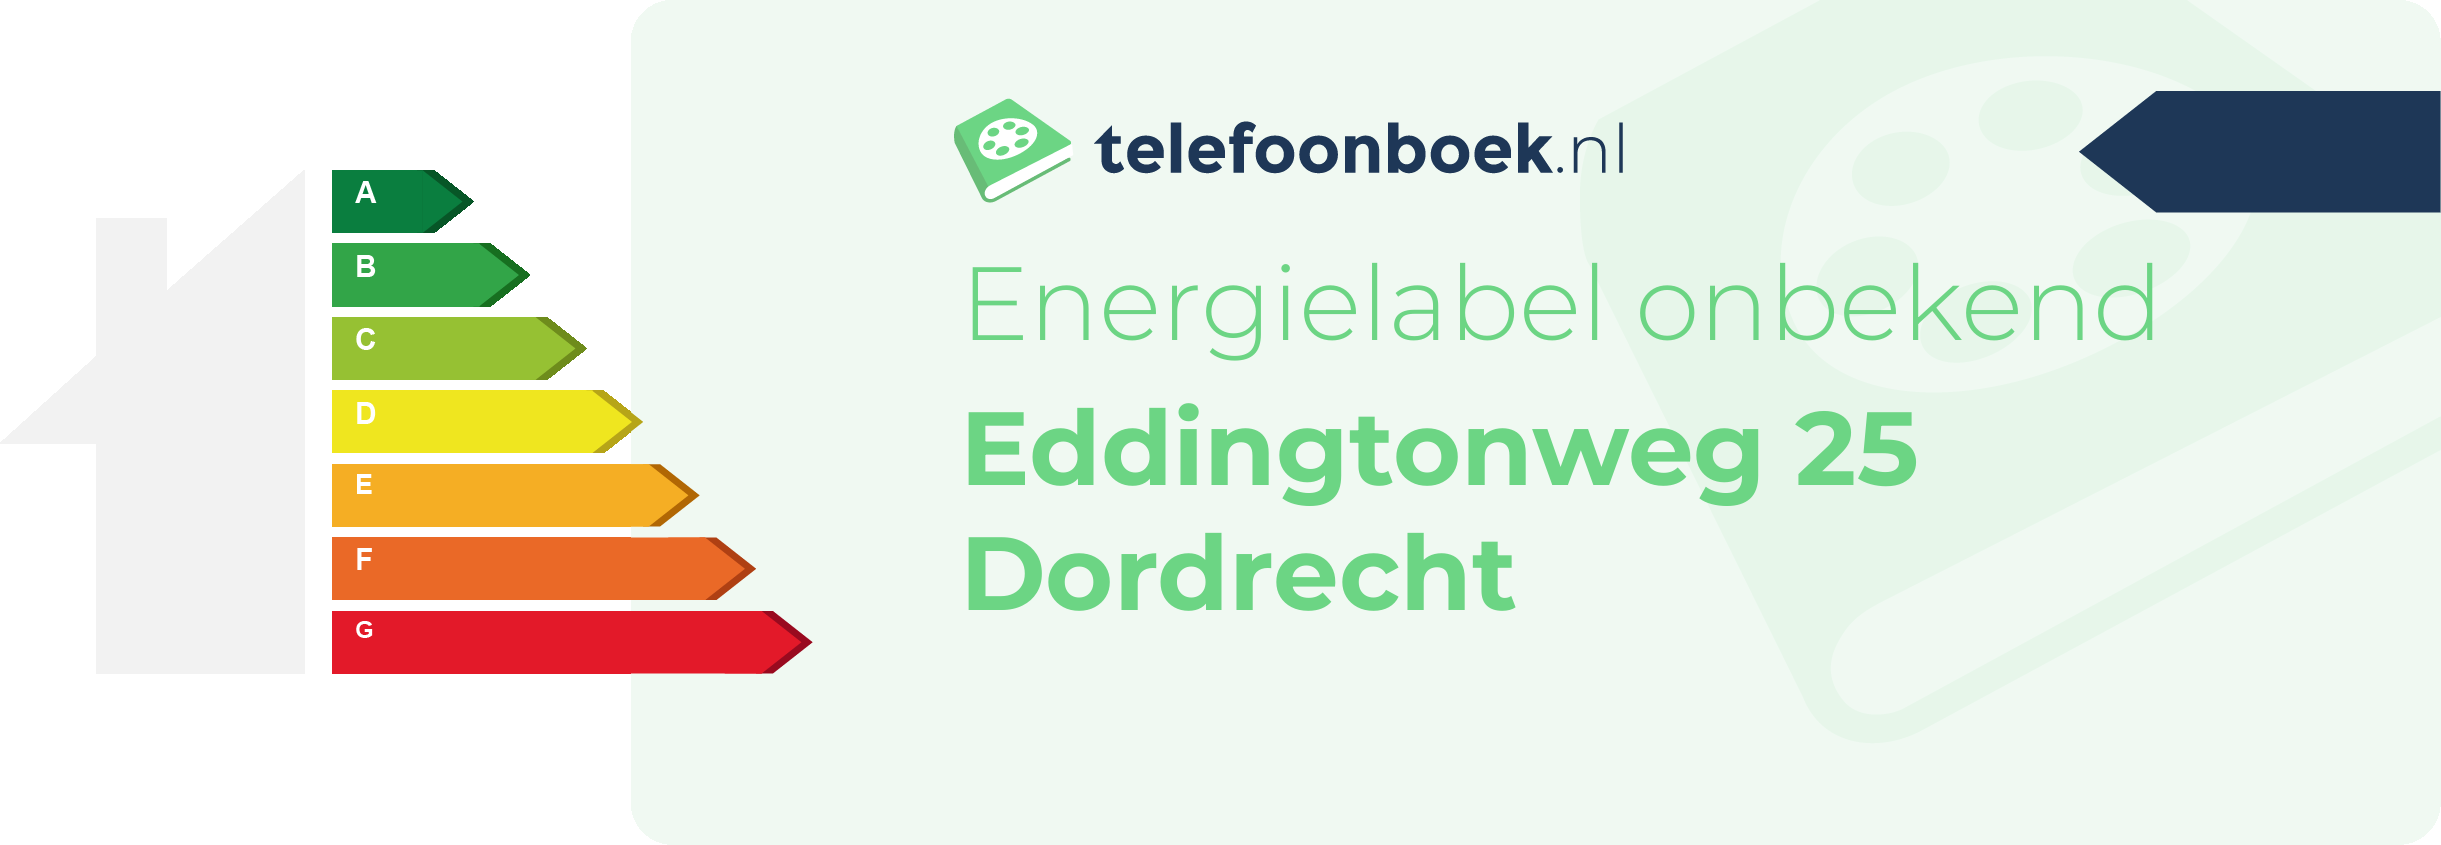 Energielabel Eddingtonweg 25 Dordrecht